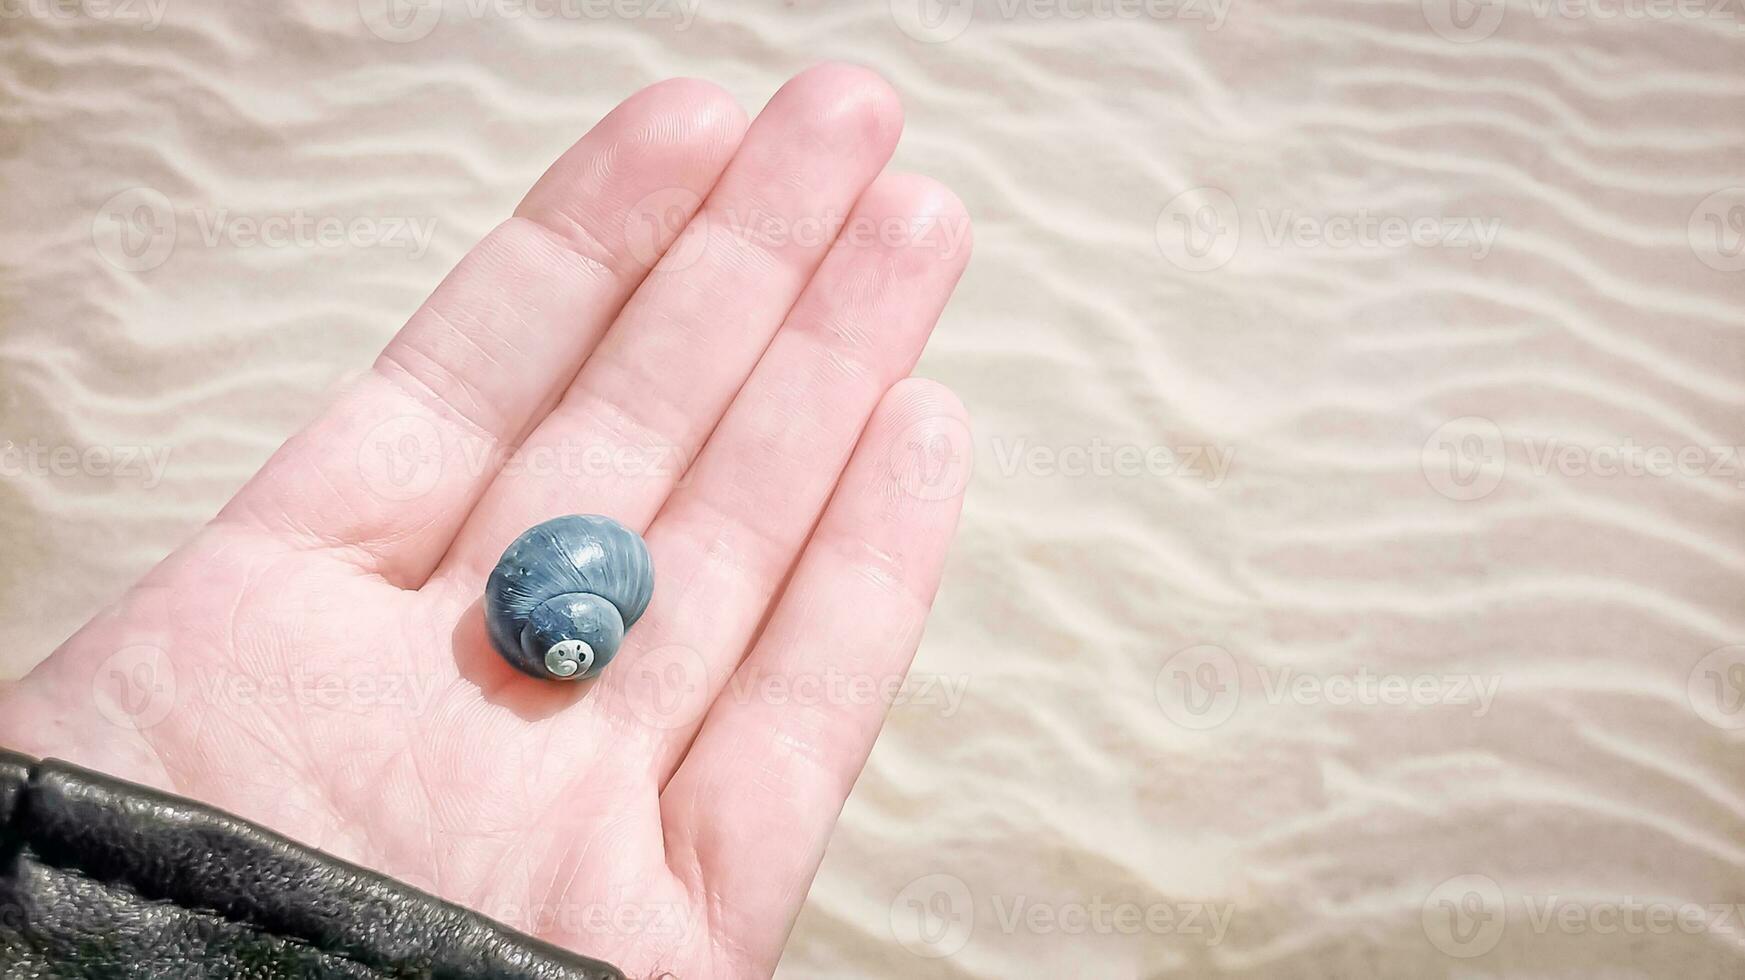 bellissimo blu conchiglia su il mano palma contro un' ondulato sabbia spiaggia sfondo foto